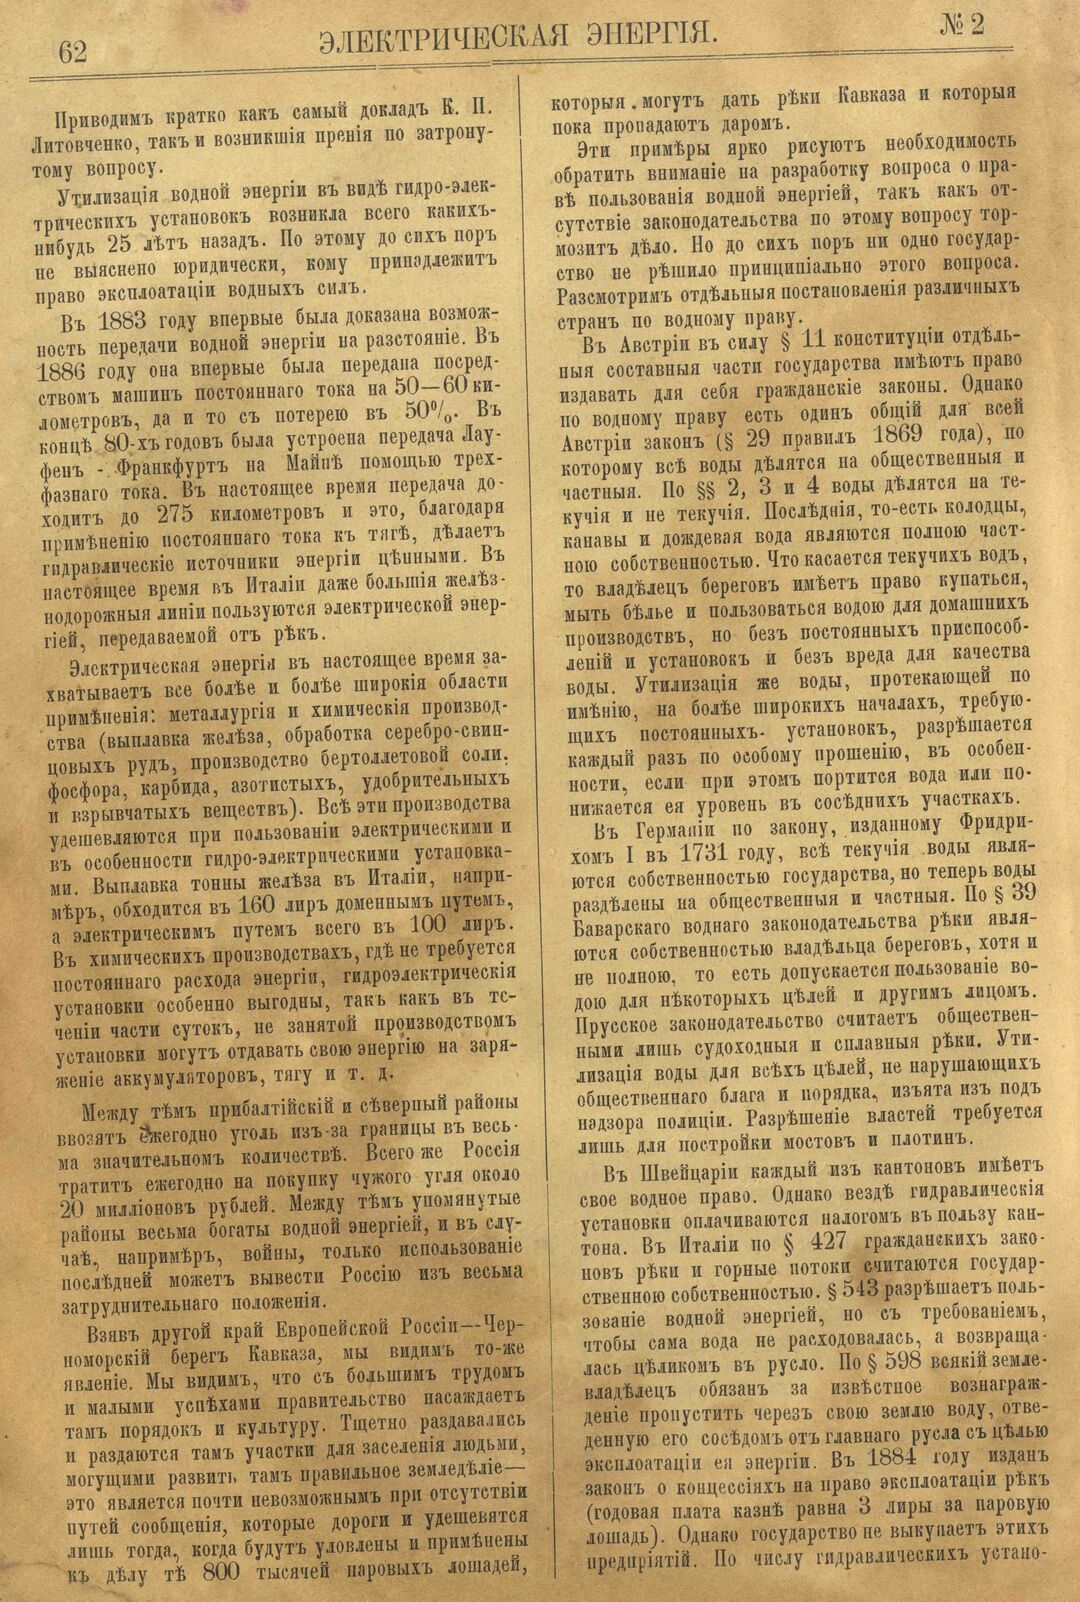 Рис. 1. Журнал Электрическая Энергiя, 2 номер, февраль, 1904 года, страница 62